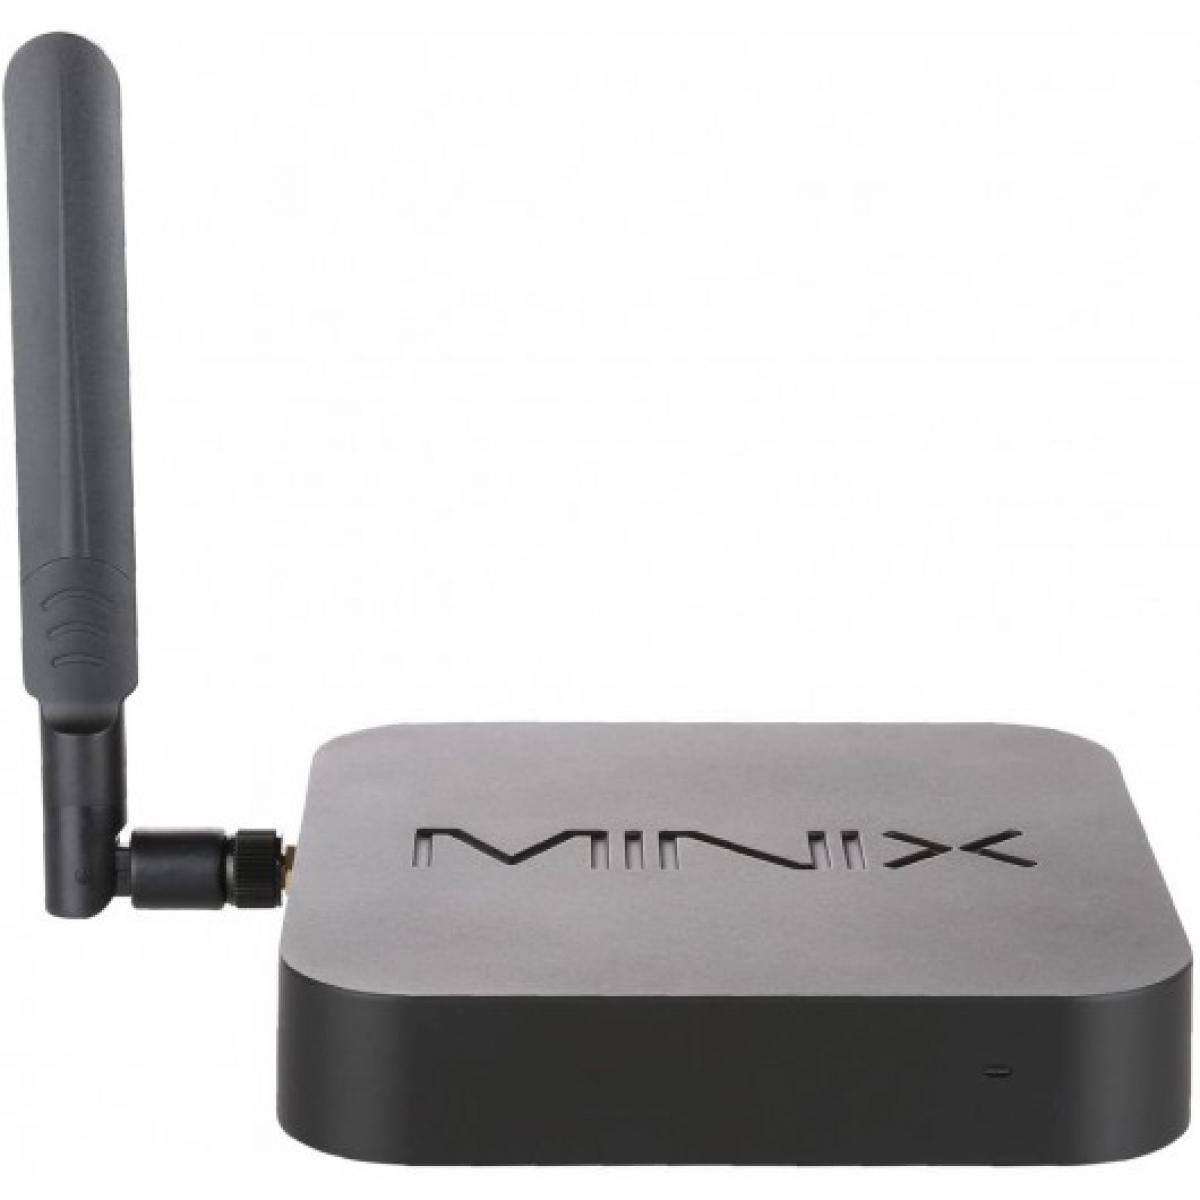 Minix - MINIX New NEO Z83-4 Plus,l'unité centrale portable - Caméra de surveillance connectée